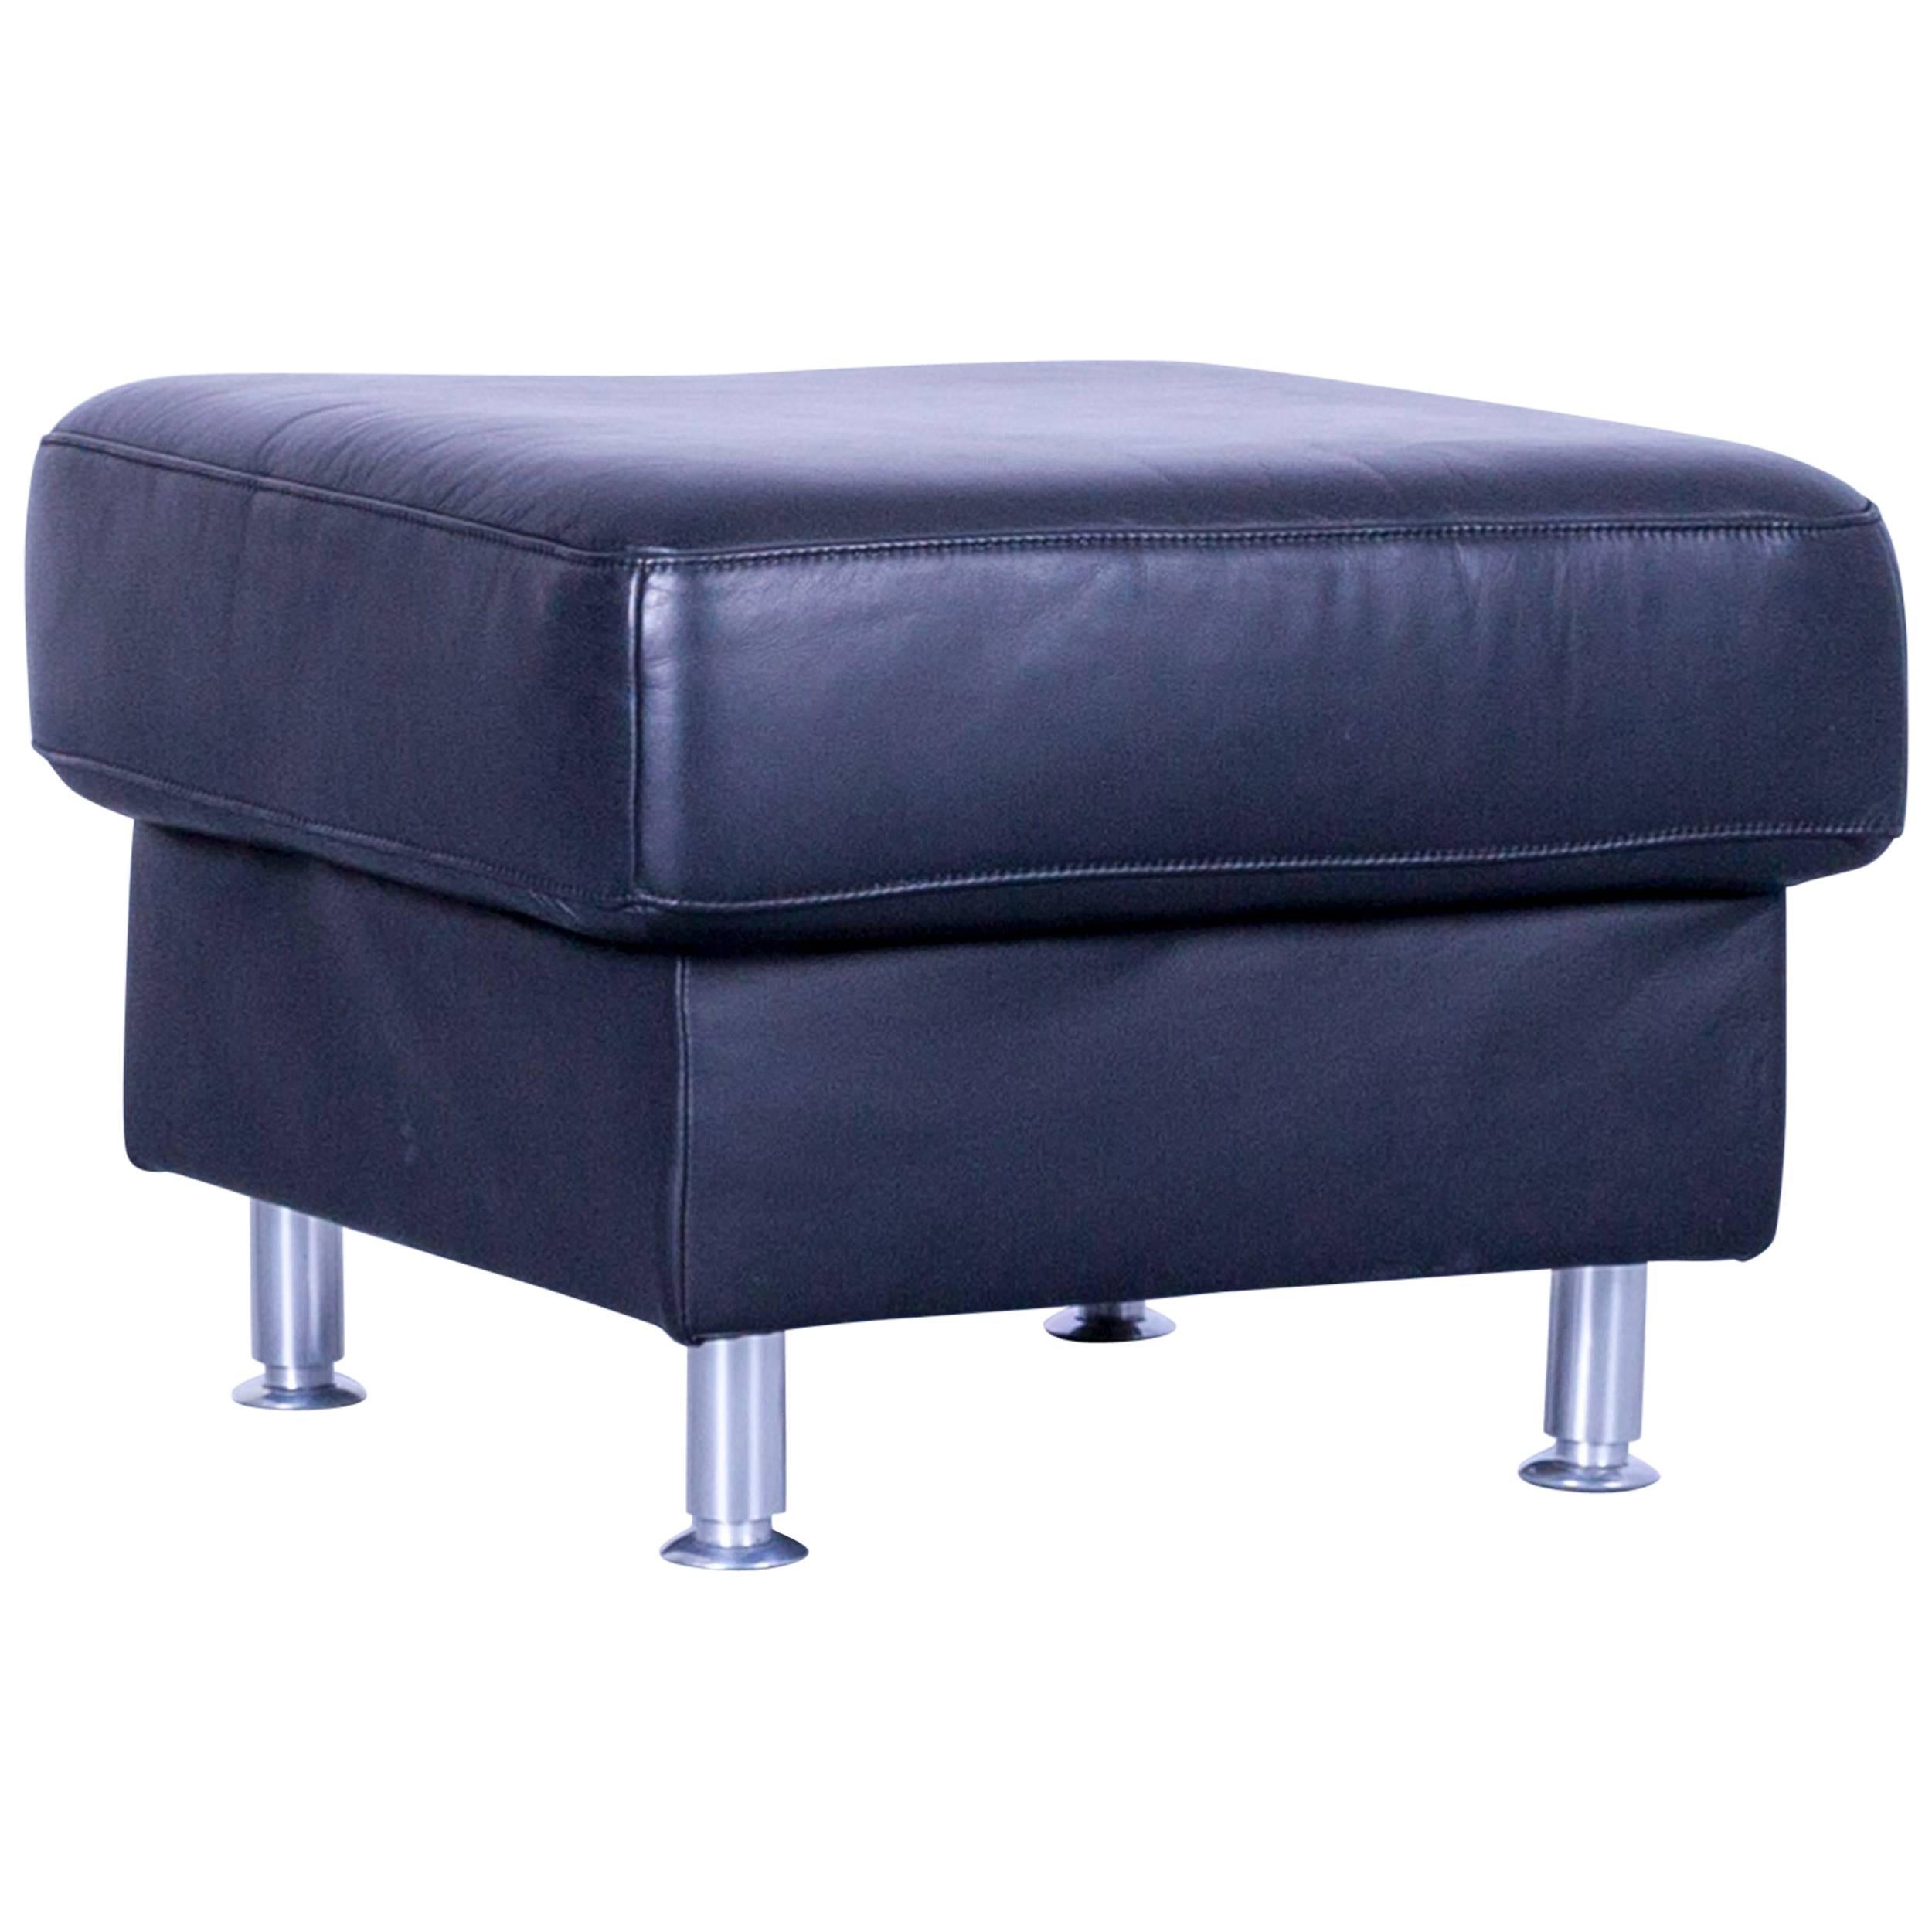 Ewald Schillig Florenz Designer Foot-Rest Black Leather Couch Modern For Sale